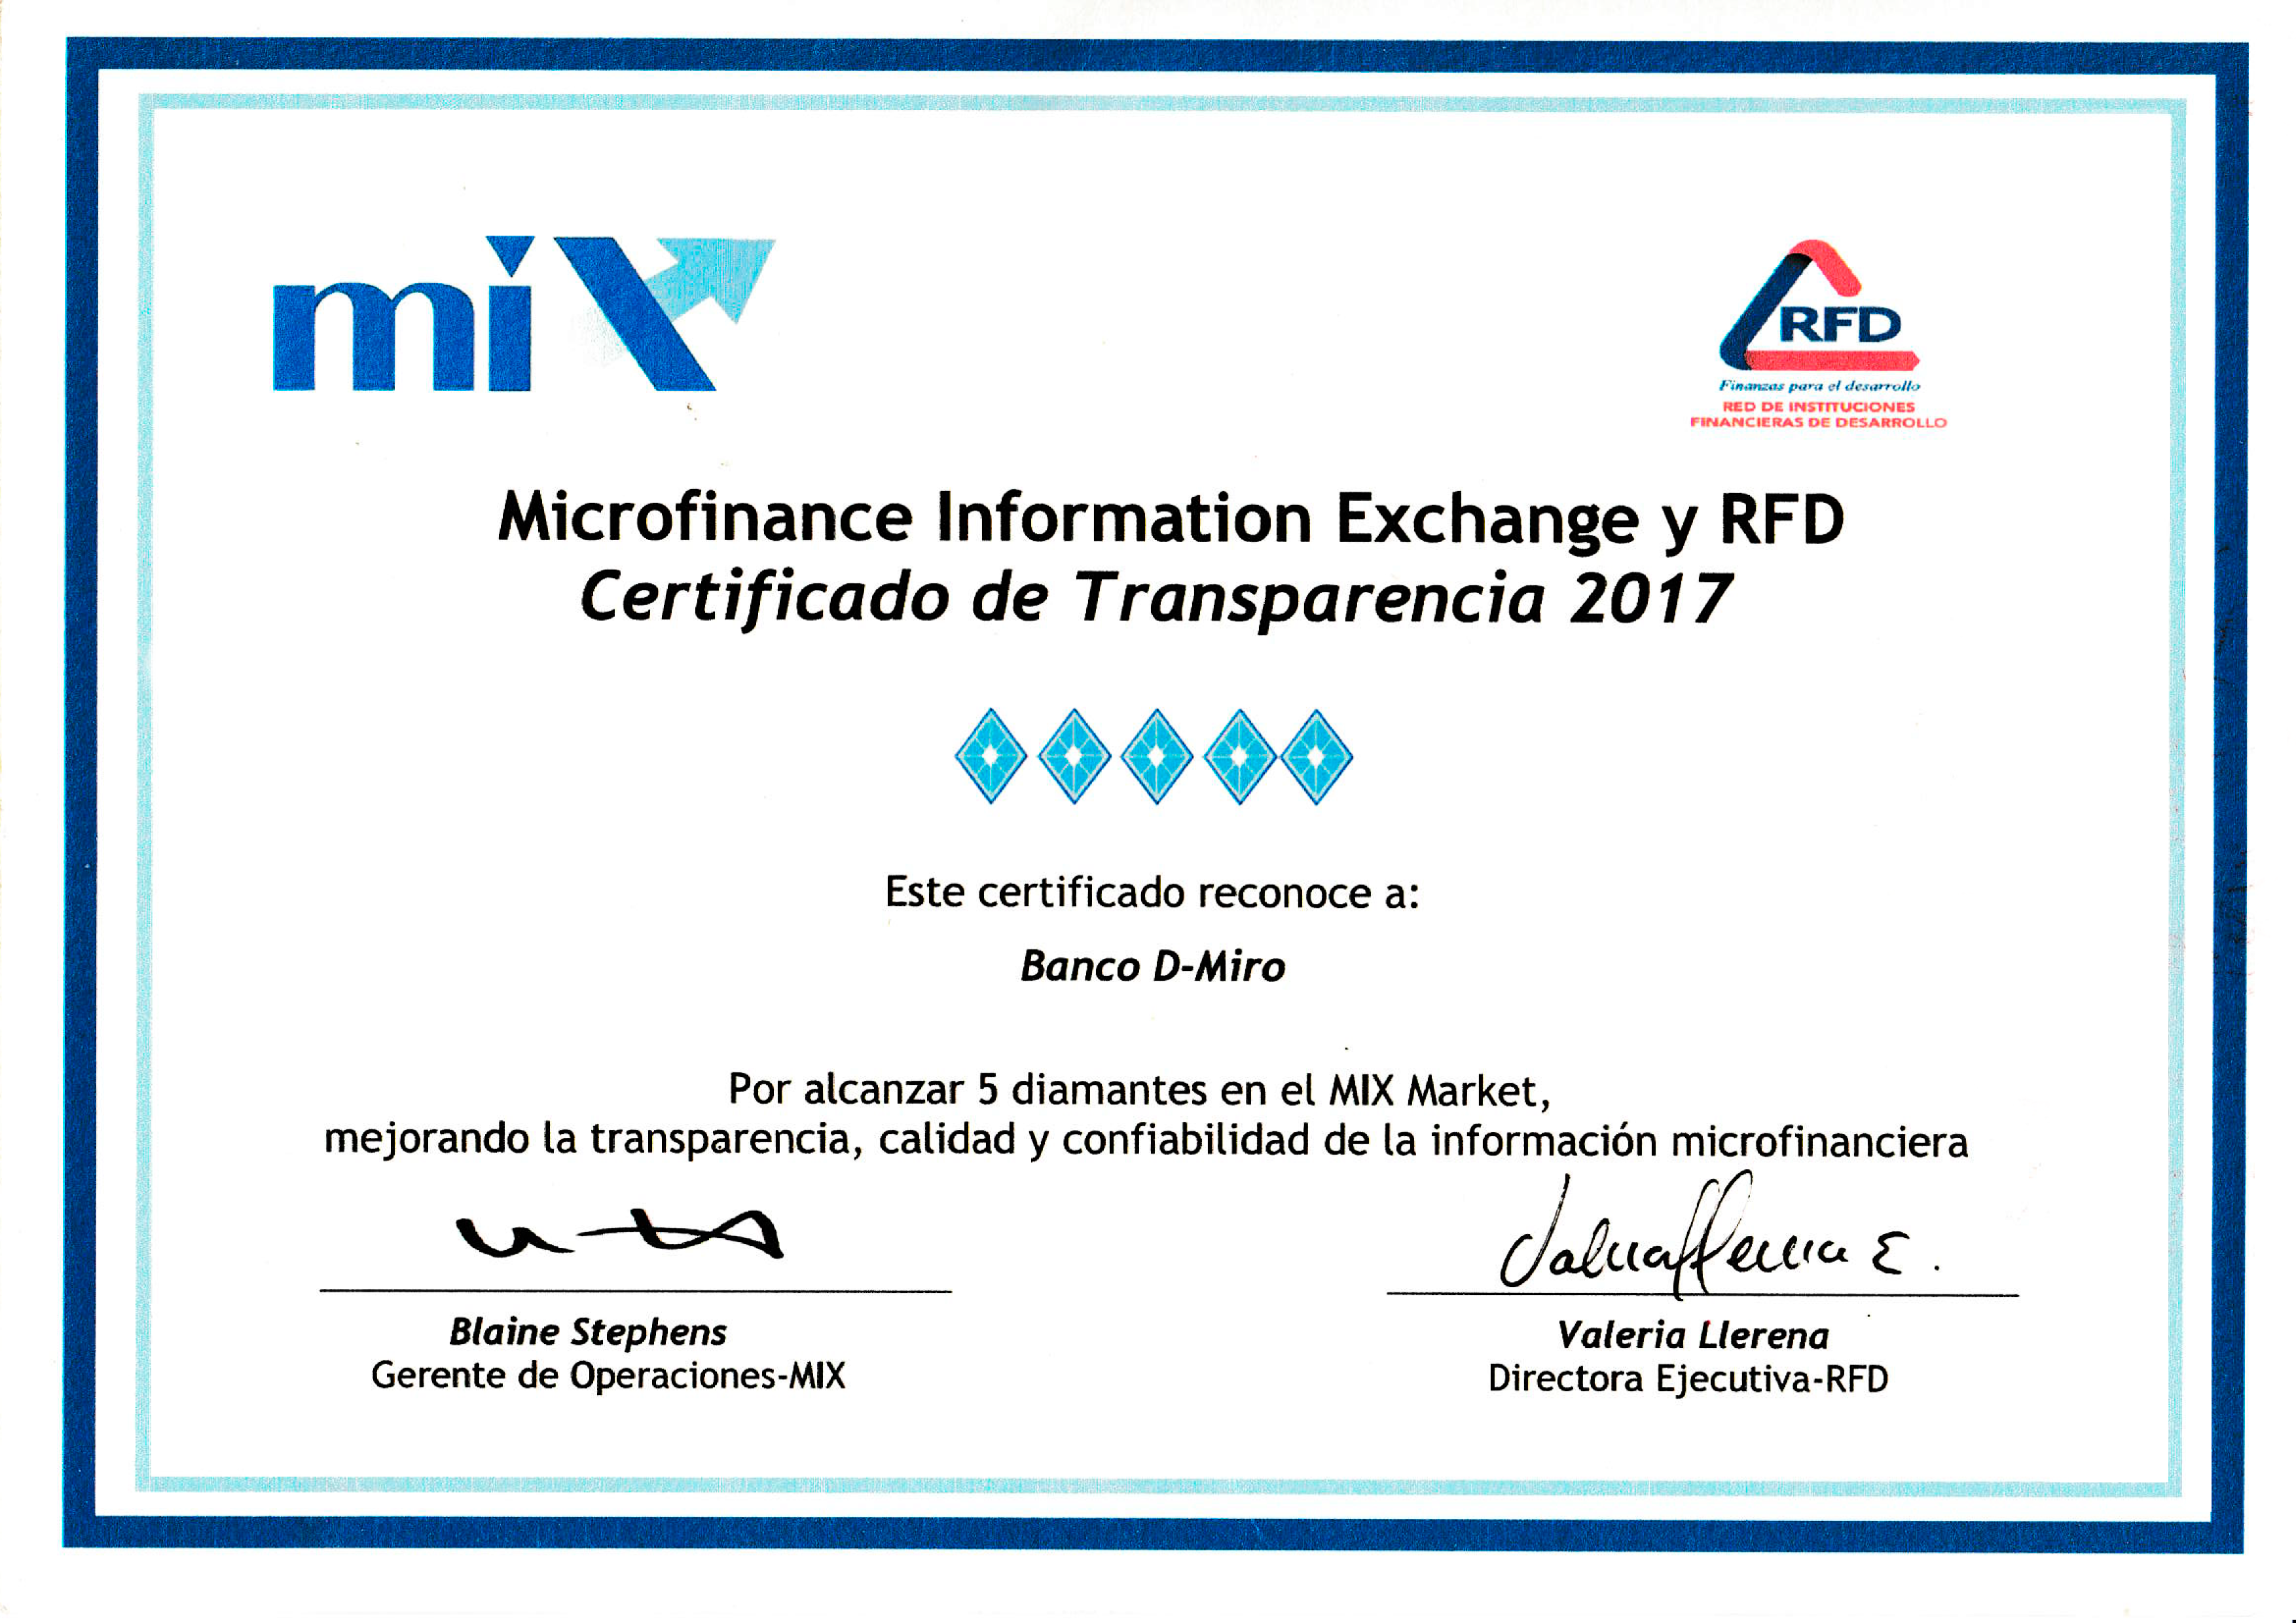 Certificado de Transparencia 2017 Microfinance Information Exchange y RFD.